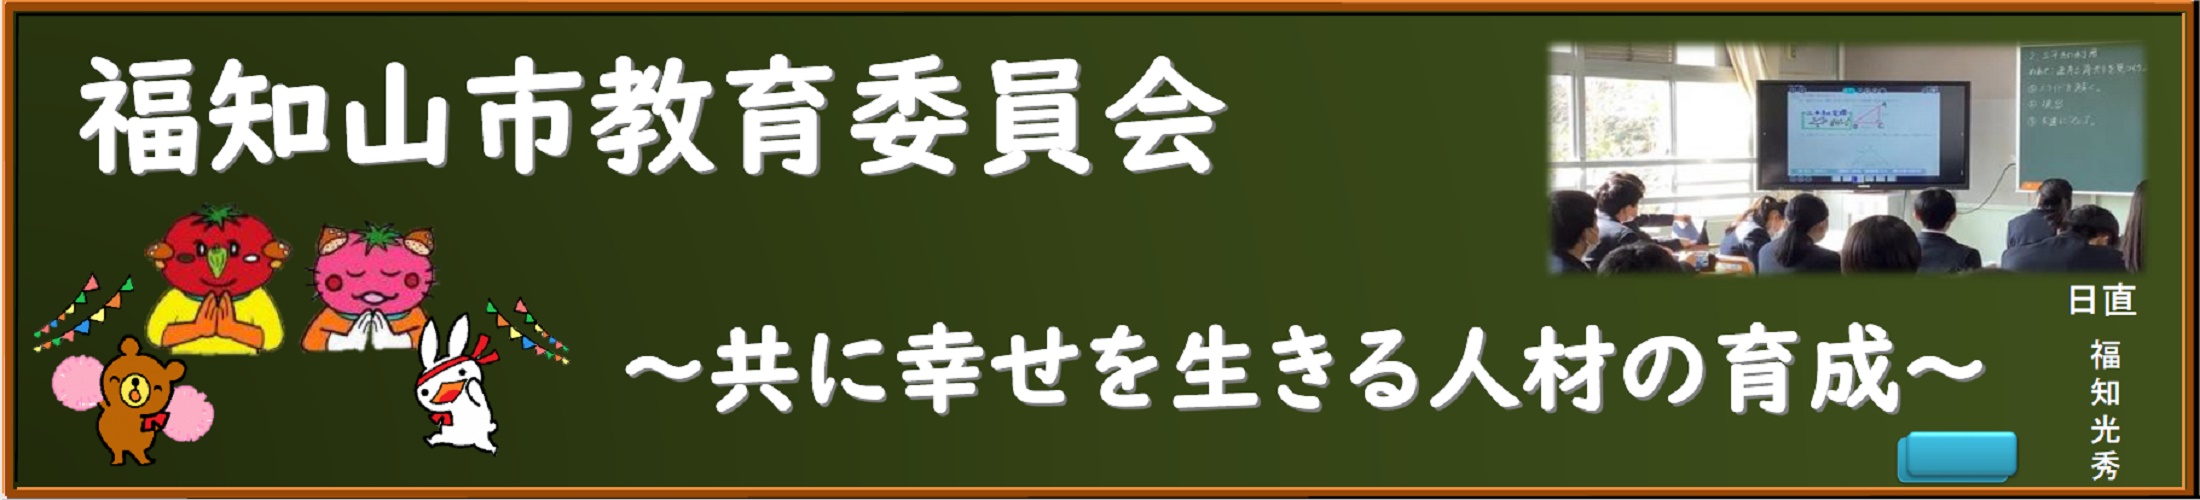 福知山市教育委員会